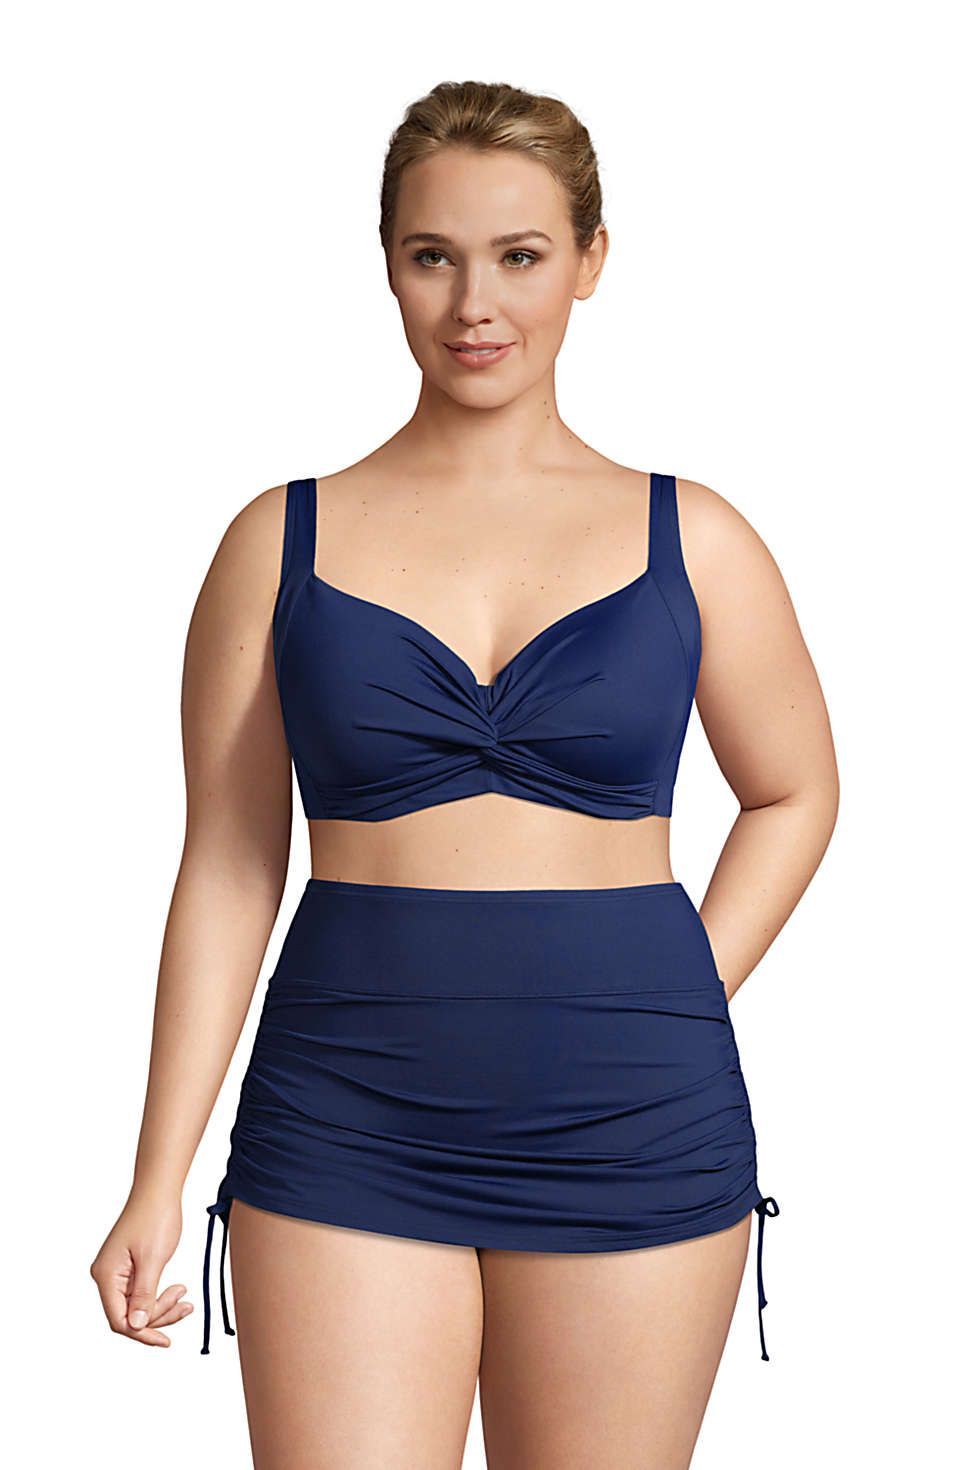 Women Plus Size Two Piece Bikini Set Underwire Halter Crop Top